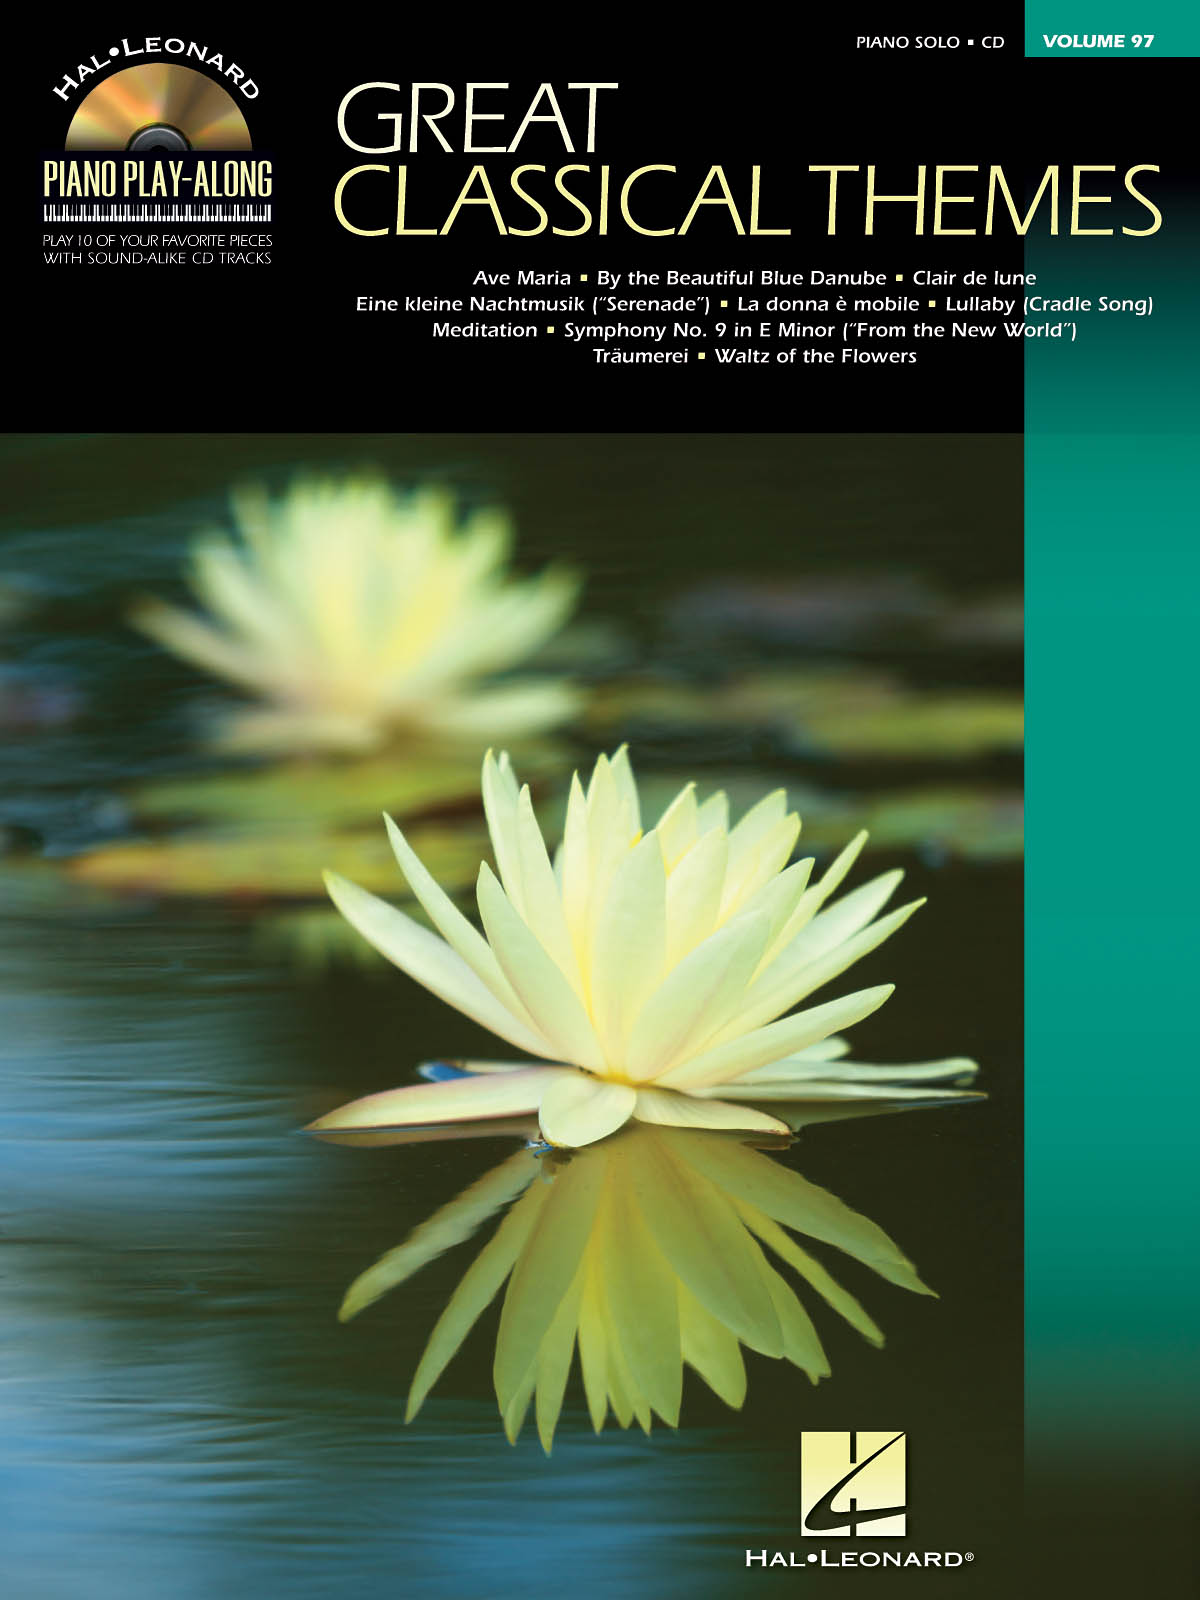 Great Classical Themes - Piano Play-Along Volume 97 známé písně pro klavír